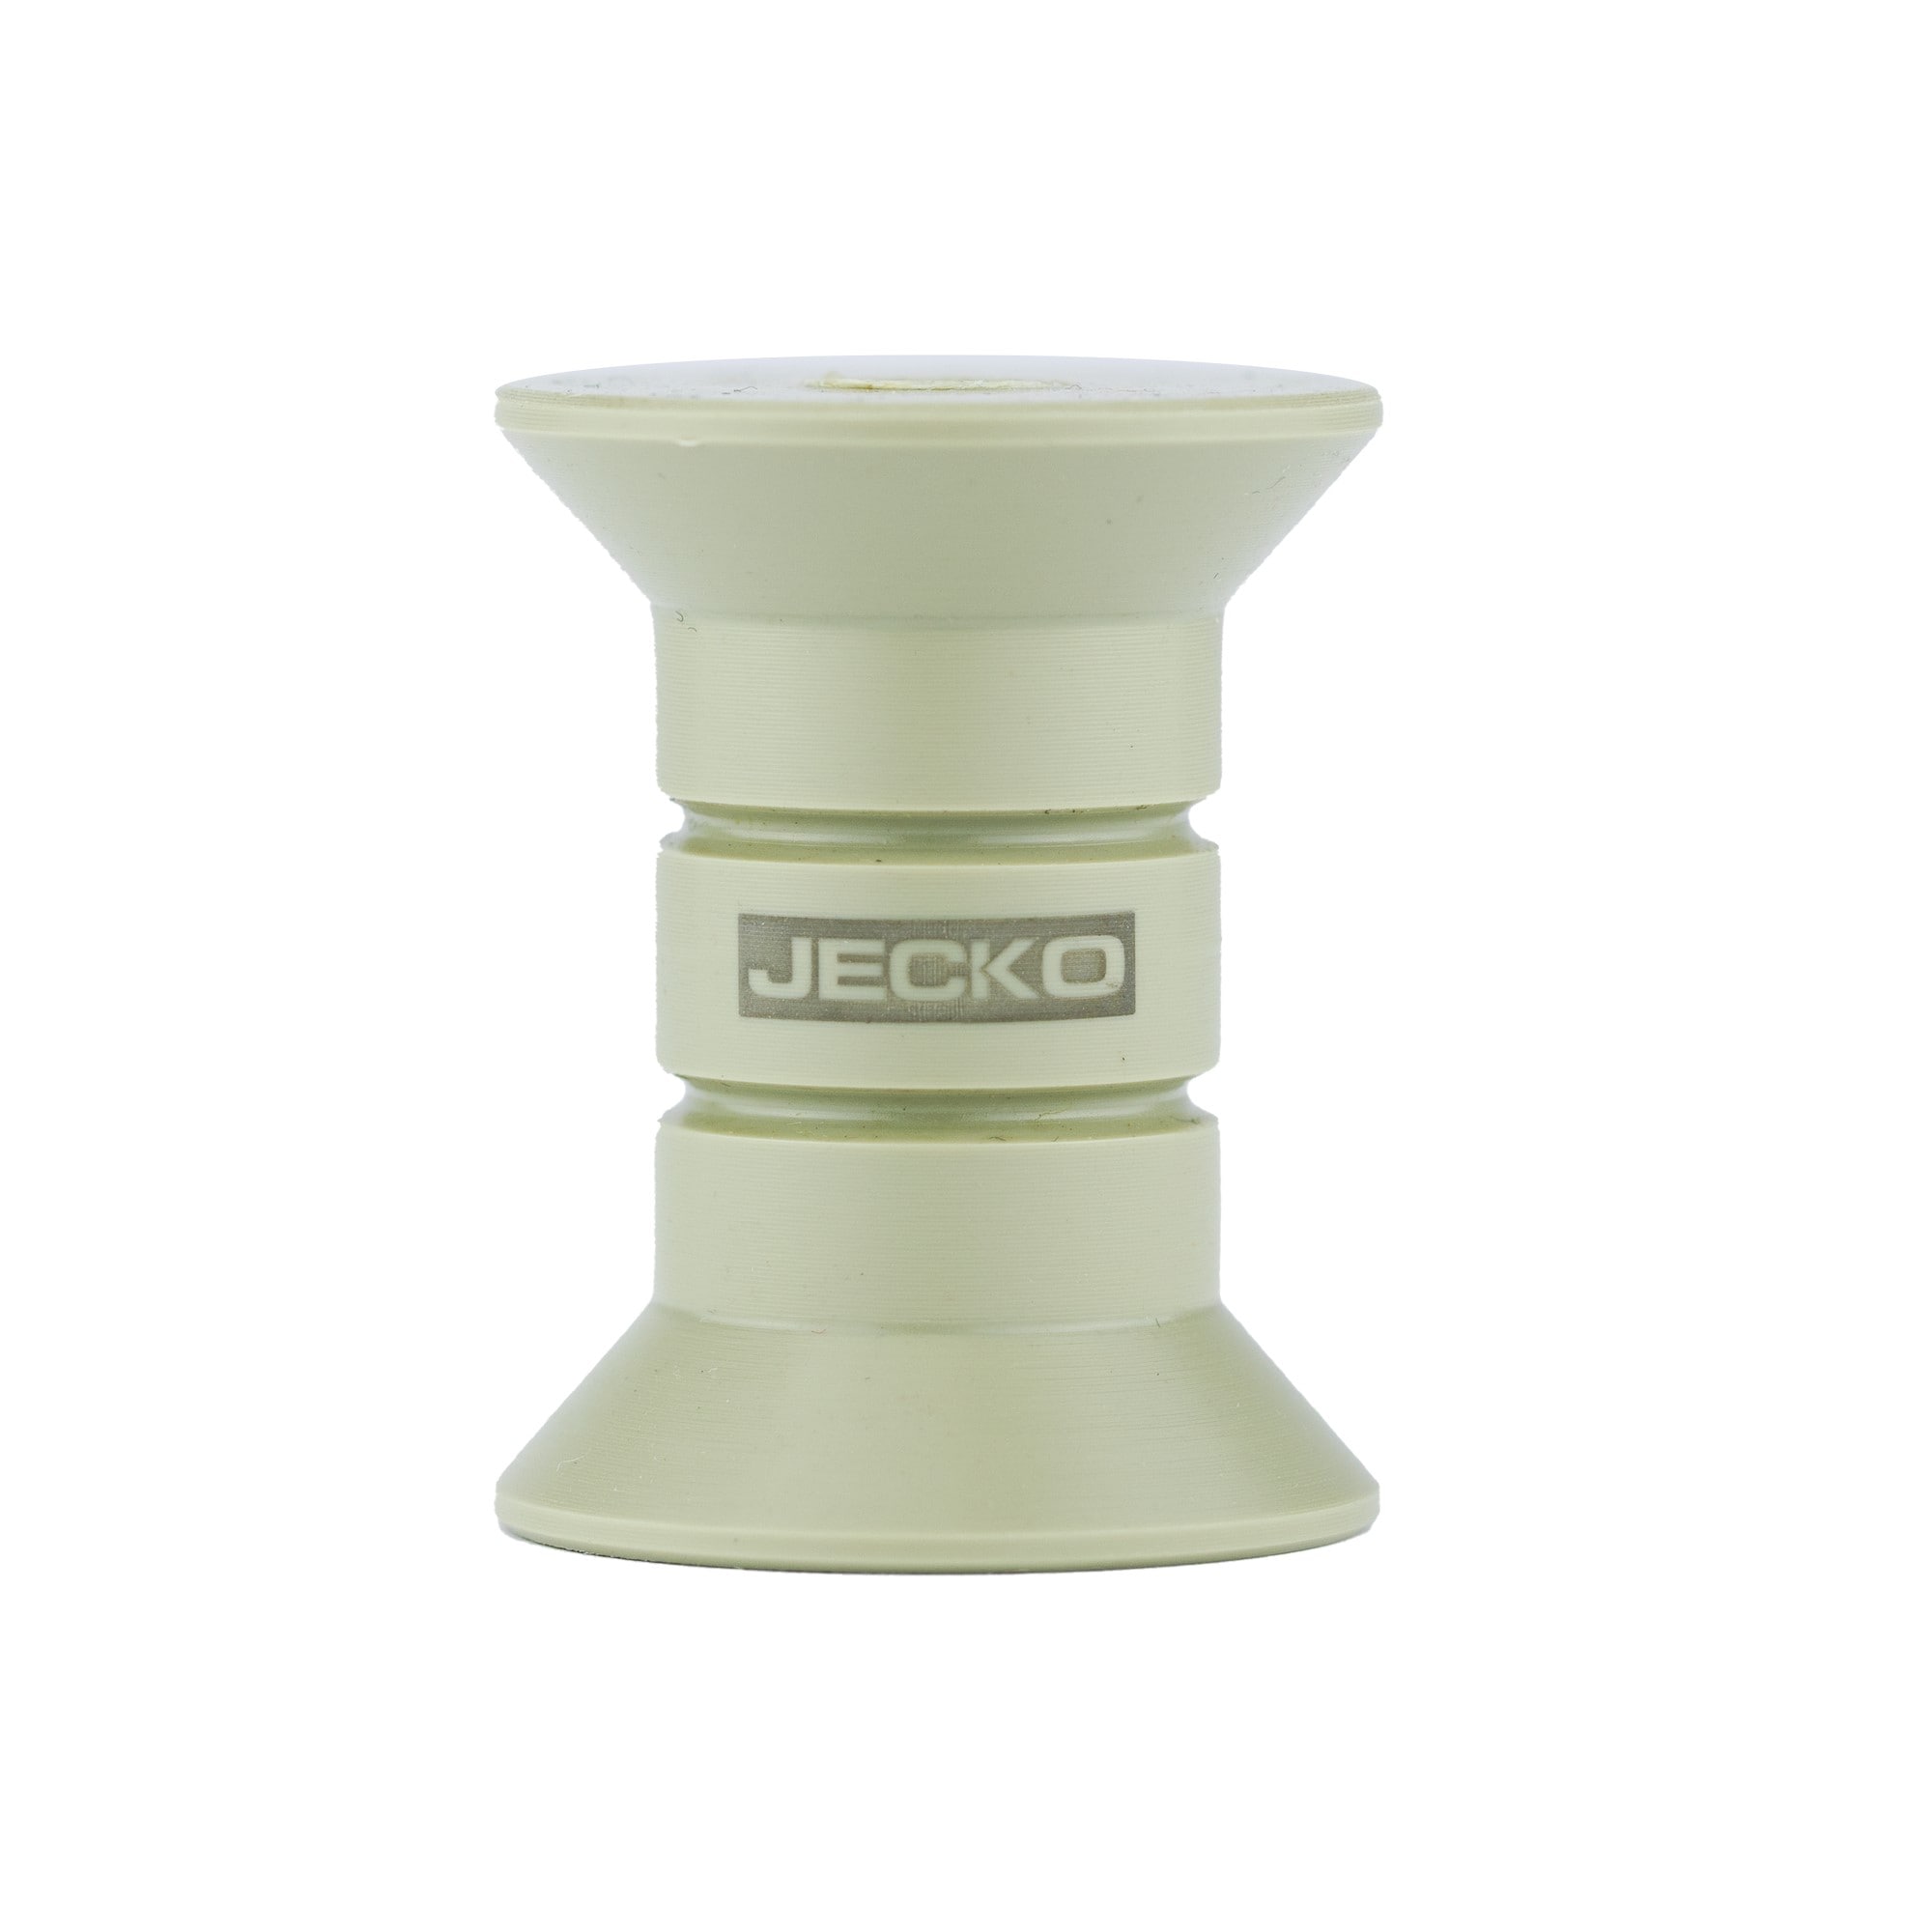 Sædeafstandsstykker Jecko (2 stk.)